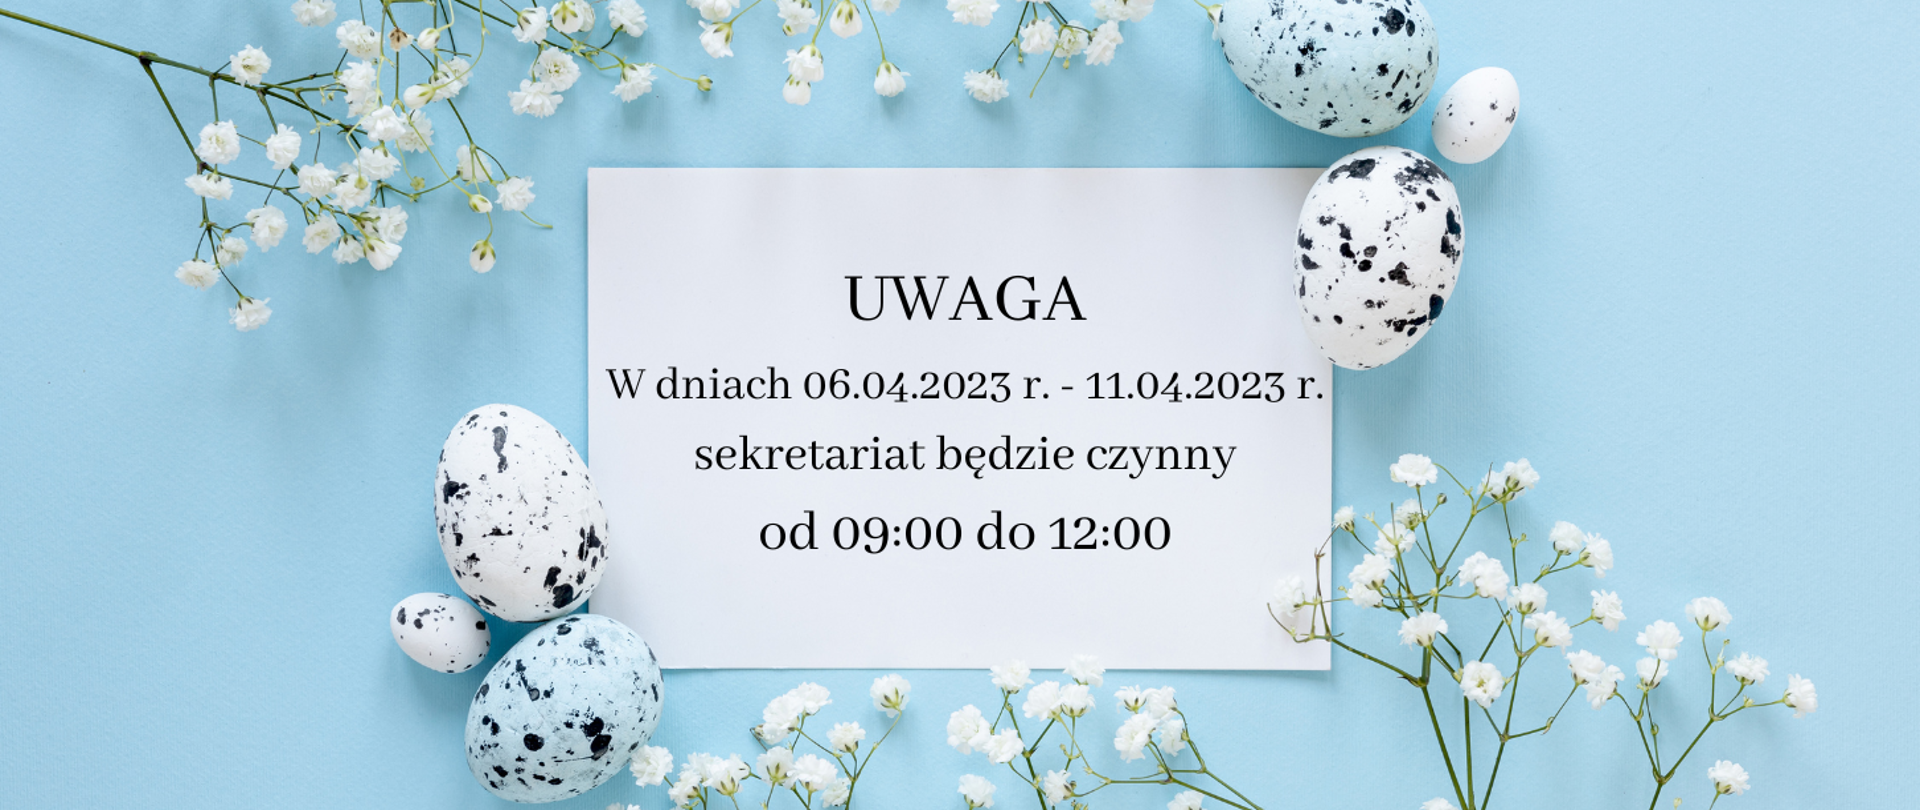 Plakat na niebieskim tle z grafika kwiatków i jajek oraz tekstem "Uwaga w dniach 06.04.2023 r. - 11.04.2023 r. sekretariat będzie czynny od 09:00 do 12:00.